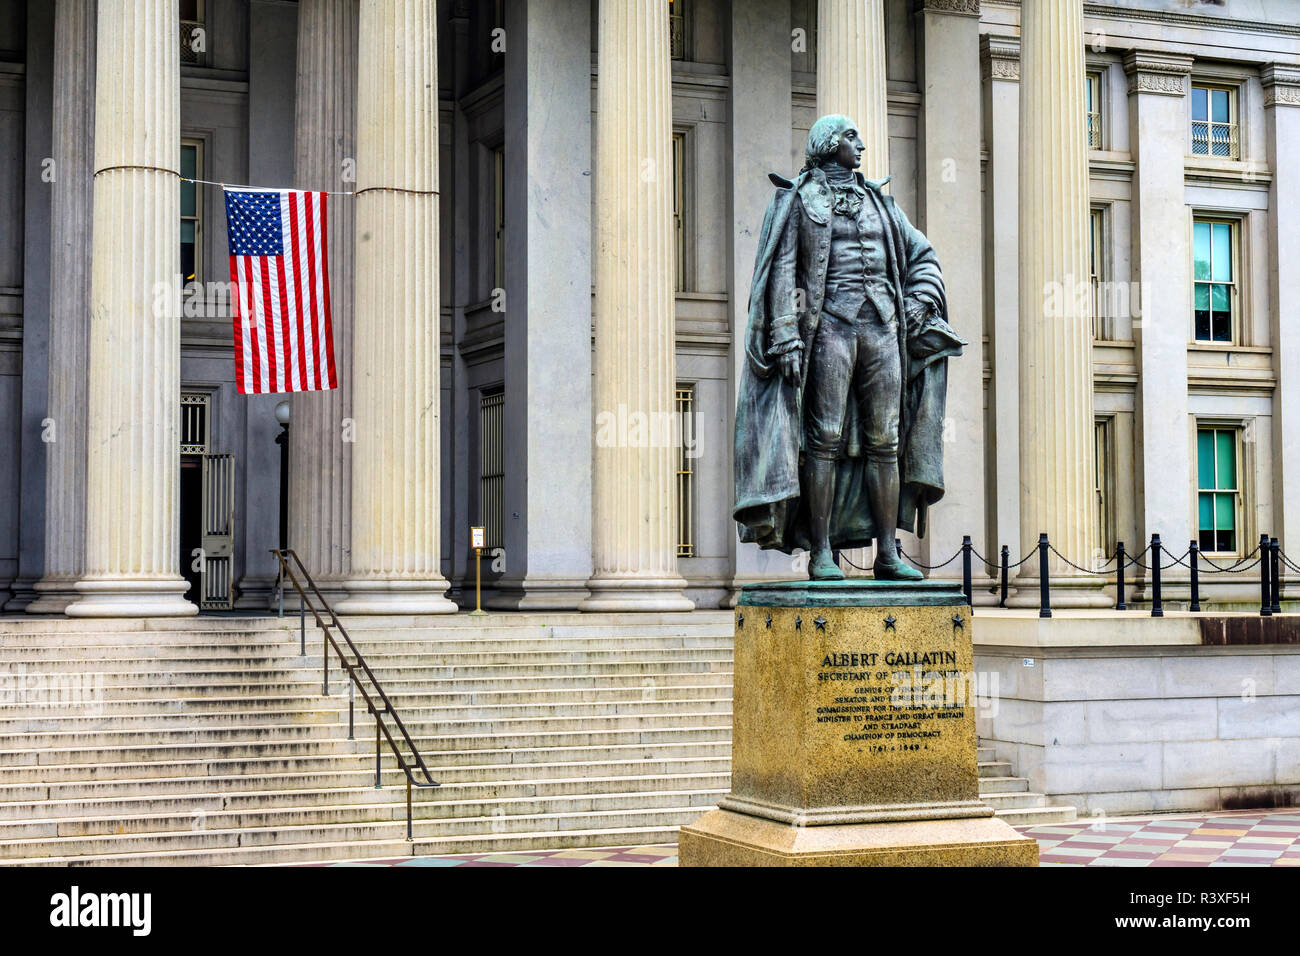 Albert Gallatin Statue US Flag Département du Trésor des États-Unis, Washington DC. Statue de James Fraser et consacrée en 1947. Banque D'Images